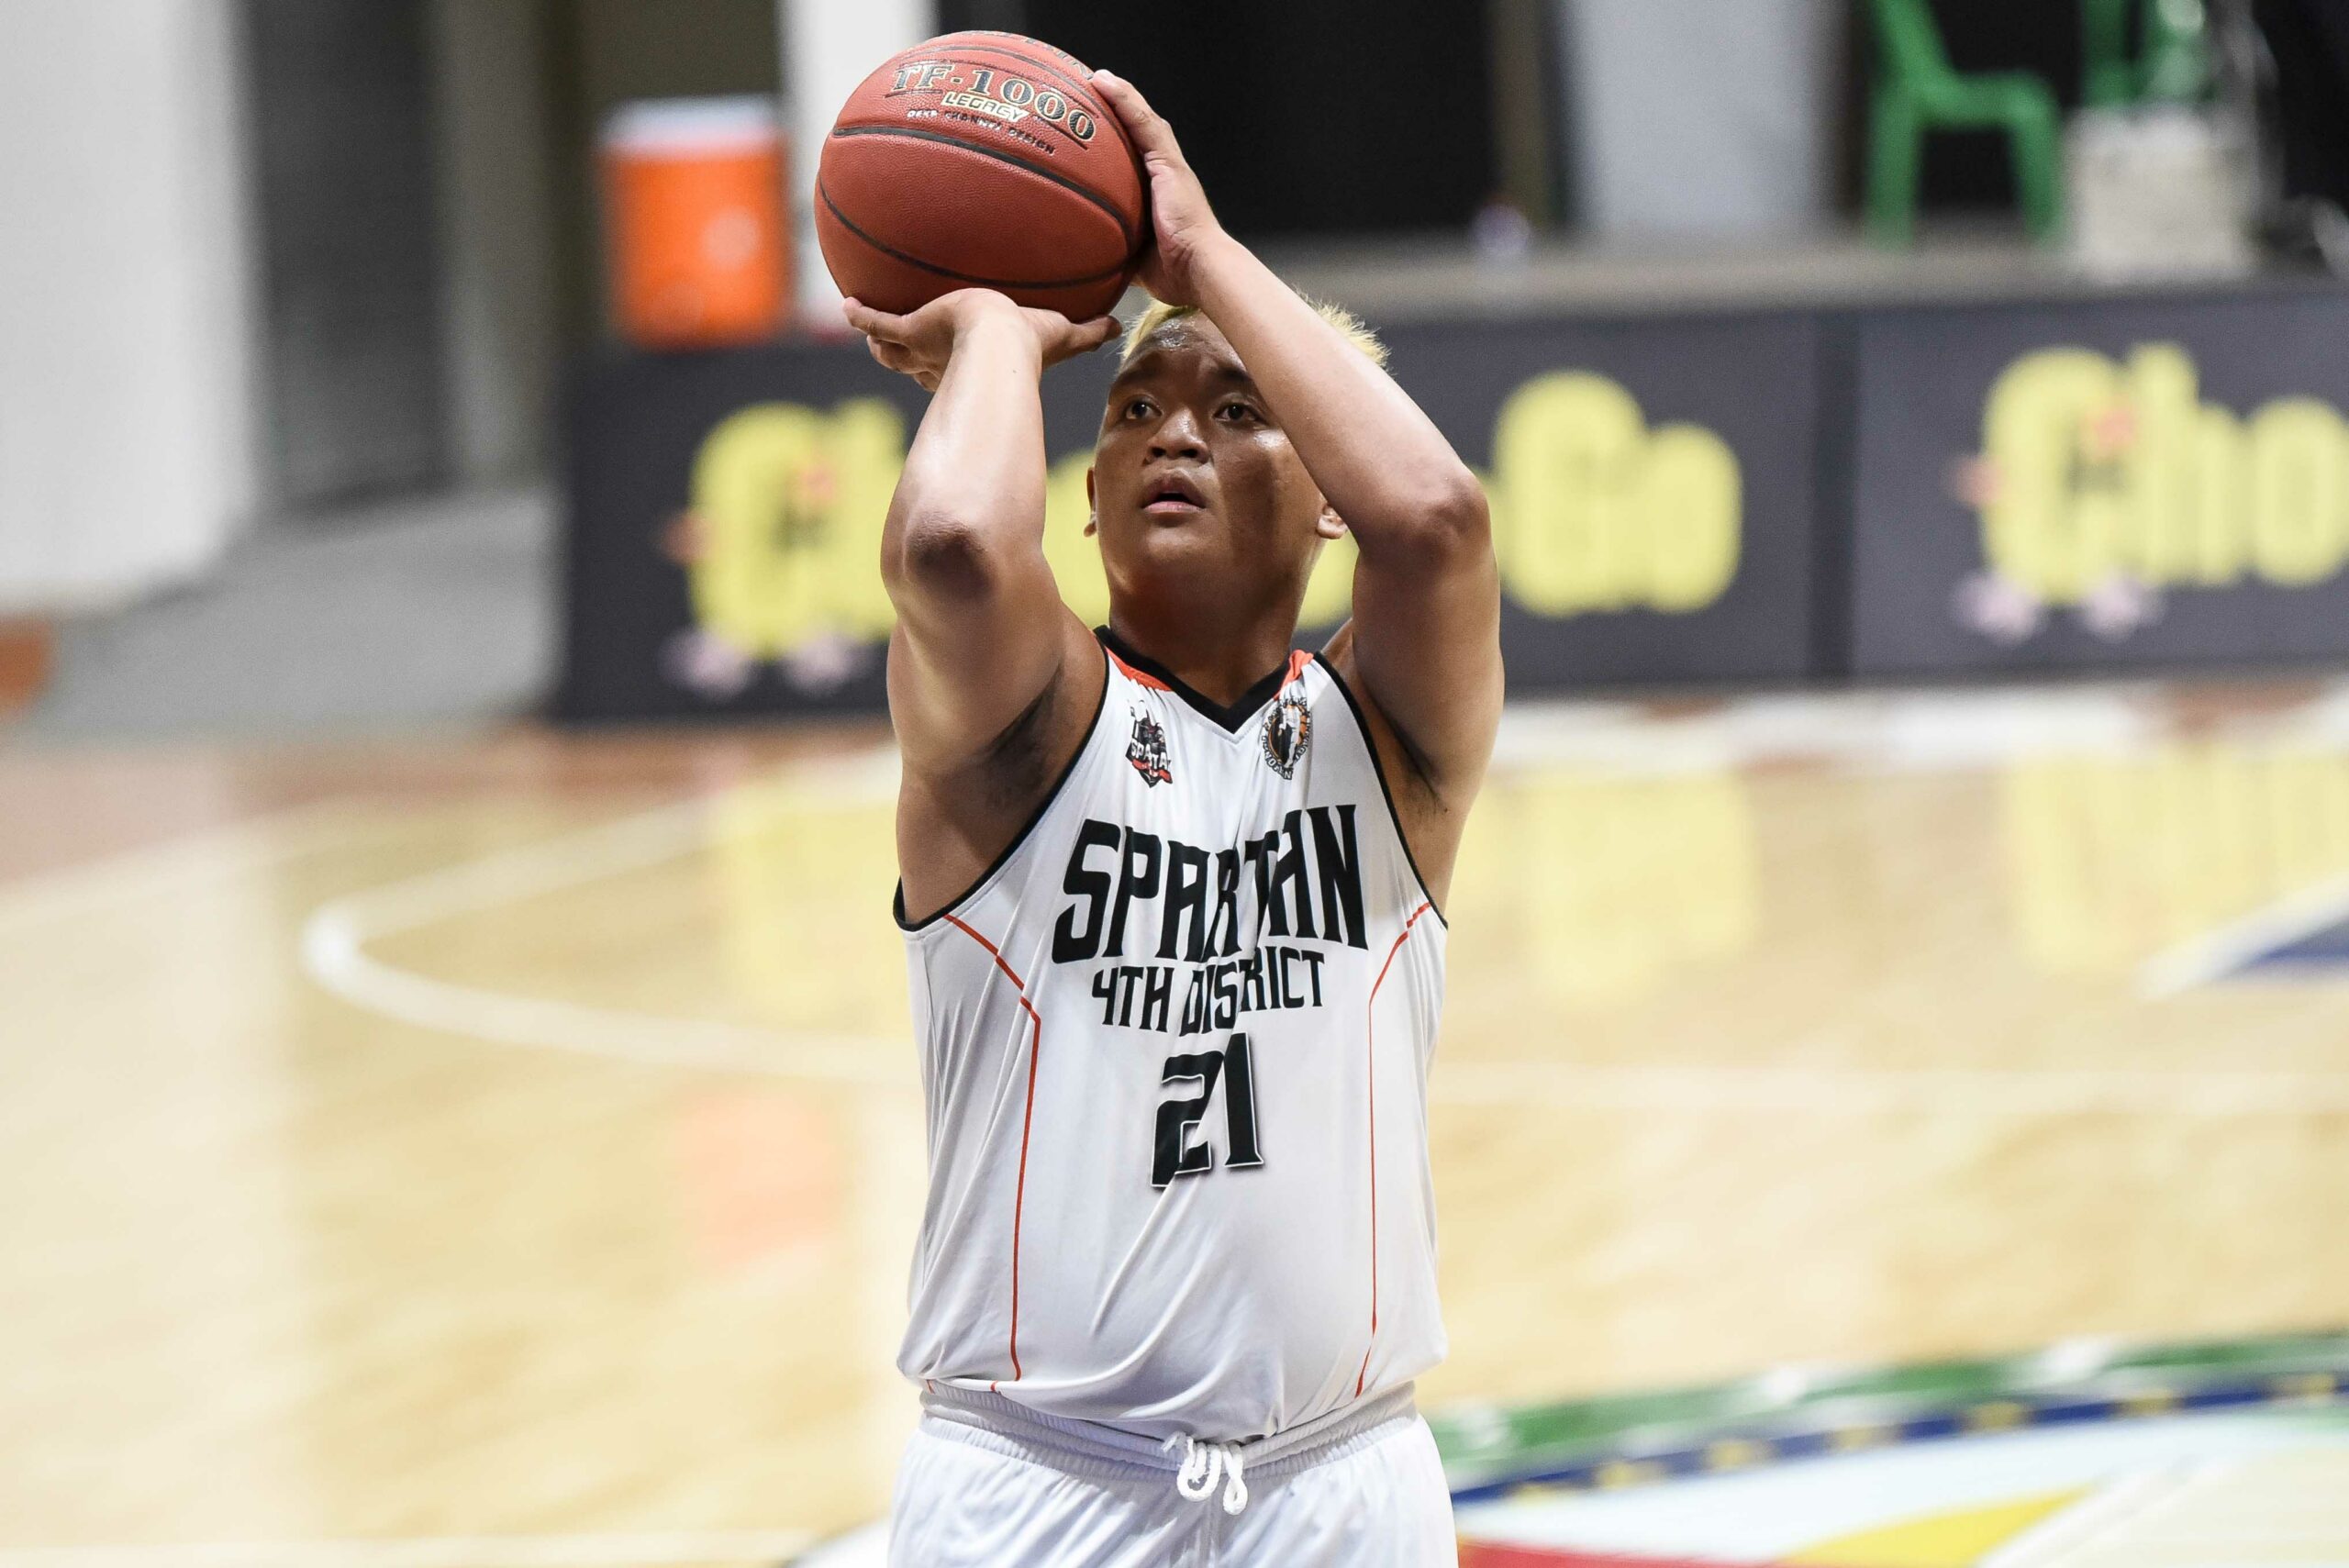 2021-Chooks-NBL-Quezon-D4-vs-La-Union-Khenth-Guiab-Spartans-scaled Marchie Blaza, Romel Doliente shine in La Union's NBL playoffs prelude Basketball NBL News  - philippine sports news